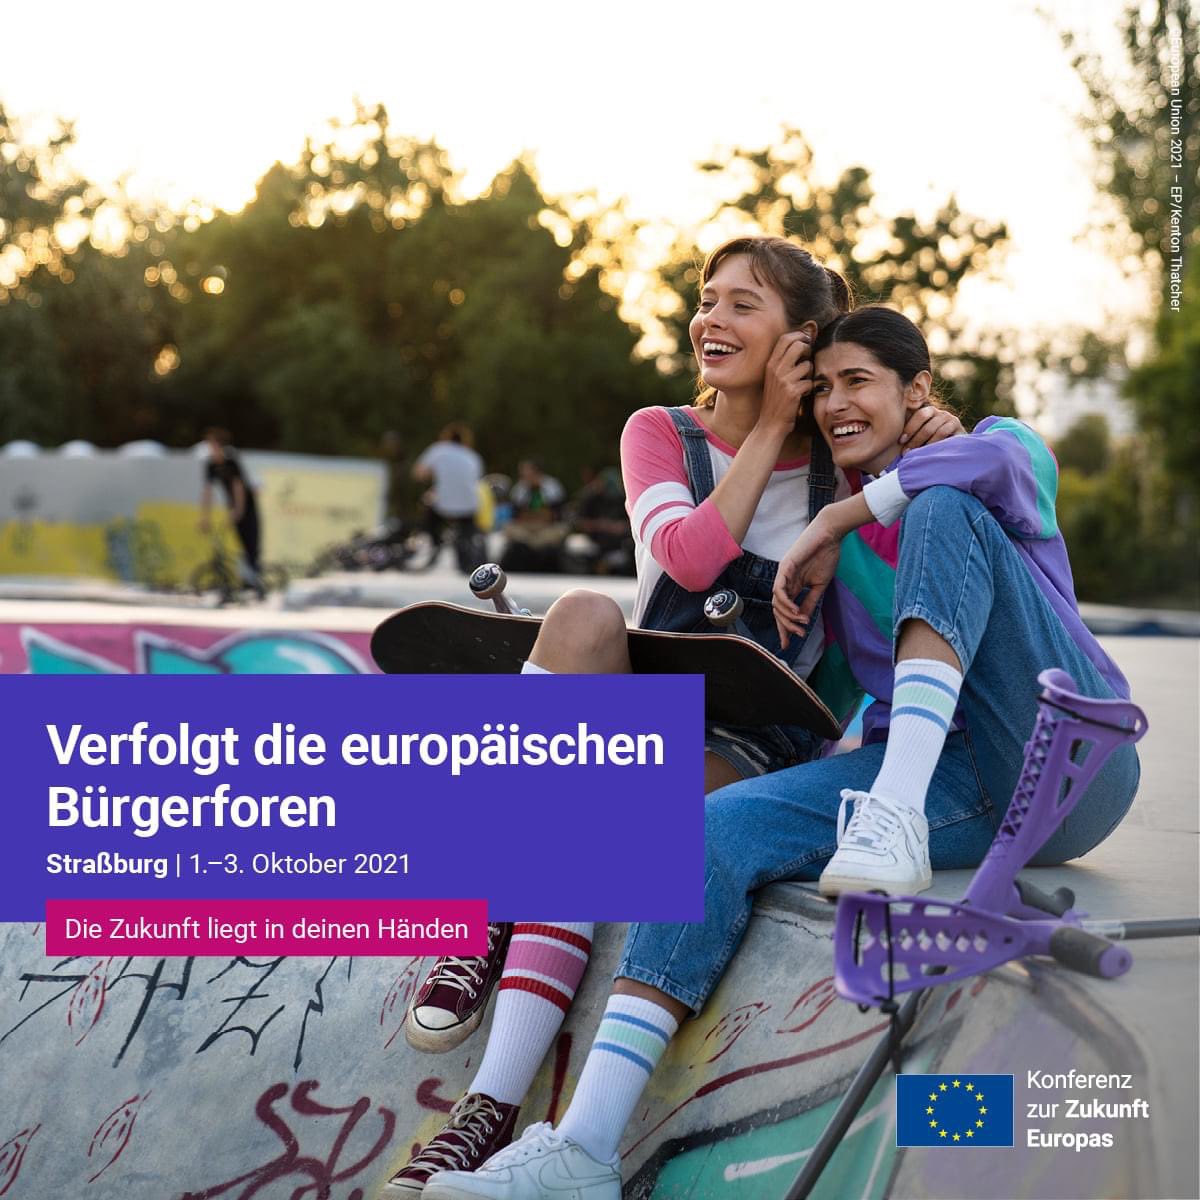 #EuropeanCitizensPanels 🇪🇺 zu Klima / Gesundheit
👉futureu.europa.eu SA🖥 11:00-11:50 epfacebook.eu/Buergerforum-0… 
SA🖥13:15-14:10 epfacebook.eu/Buergerforum-0… 
SO🖥09:00-09:20 epfacebook.eu/Buergerforum-0… 
SO🖥11:15-13:00: epfacebook.eu/Buergerforum-0… 
#CoFoE
#TheFutureIsYours
#PulseofEurope